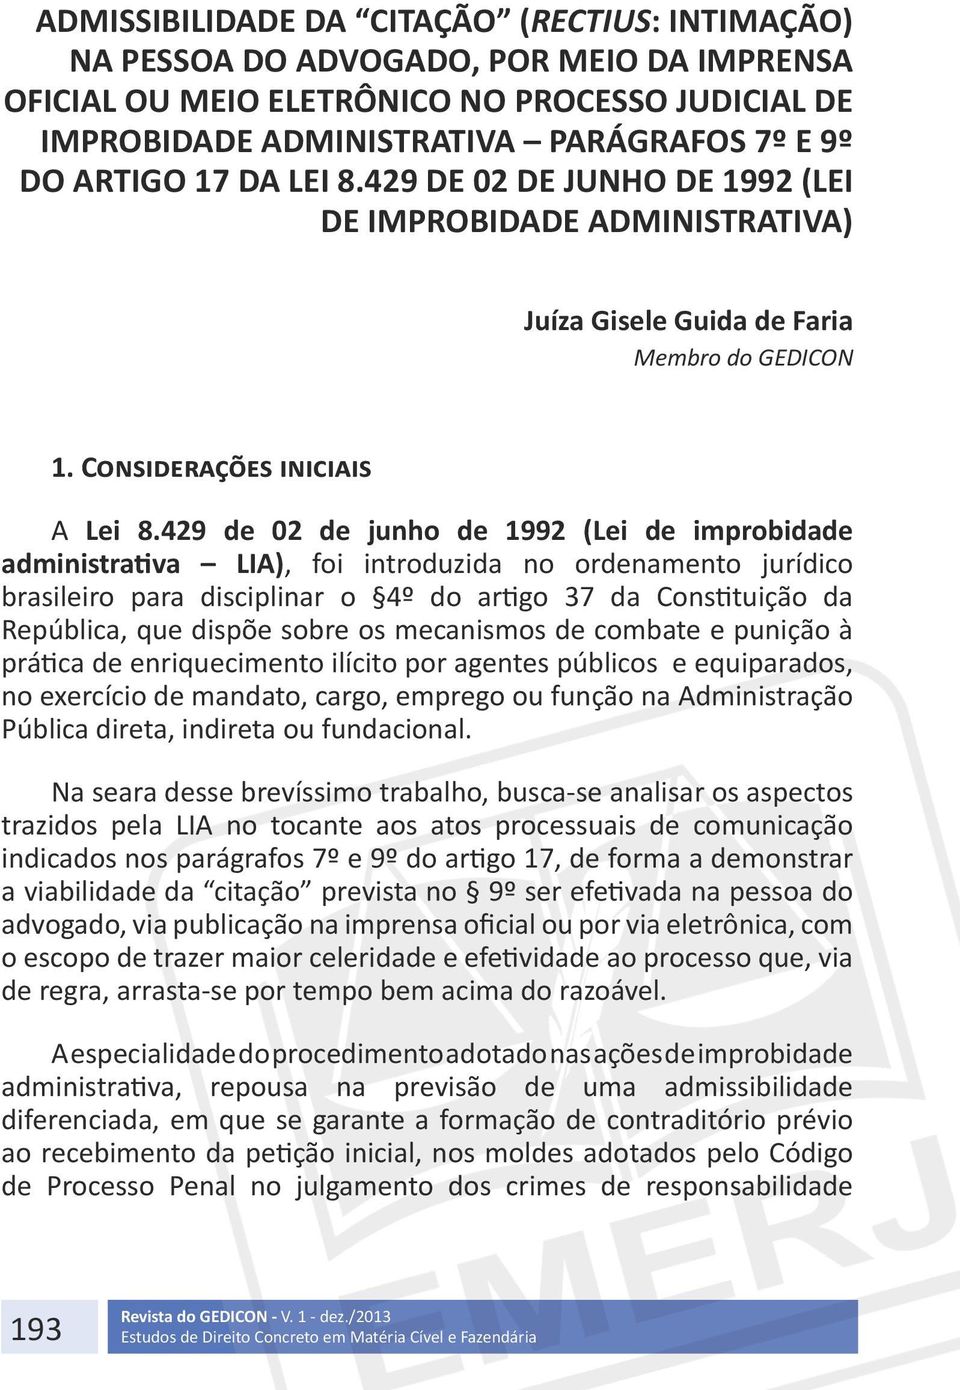 429 de 02 de junho de 1992 (Lei de improbidade administrativa LIA), foi introduzida no ordenamento jurídico brasileiro para disciplinar o 4º do artigo 37 da Constituição da República, que dispõe